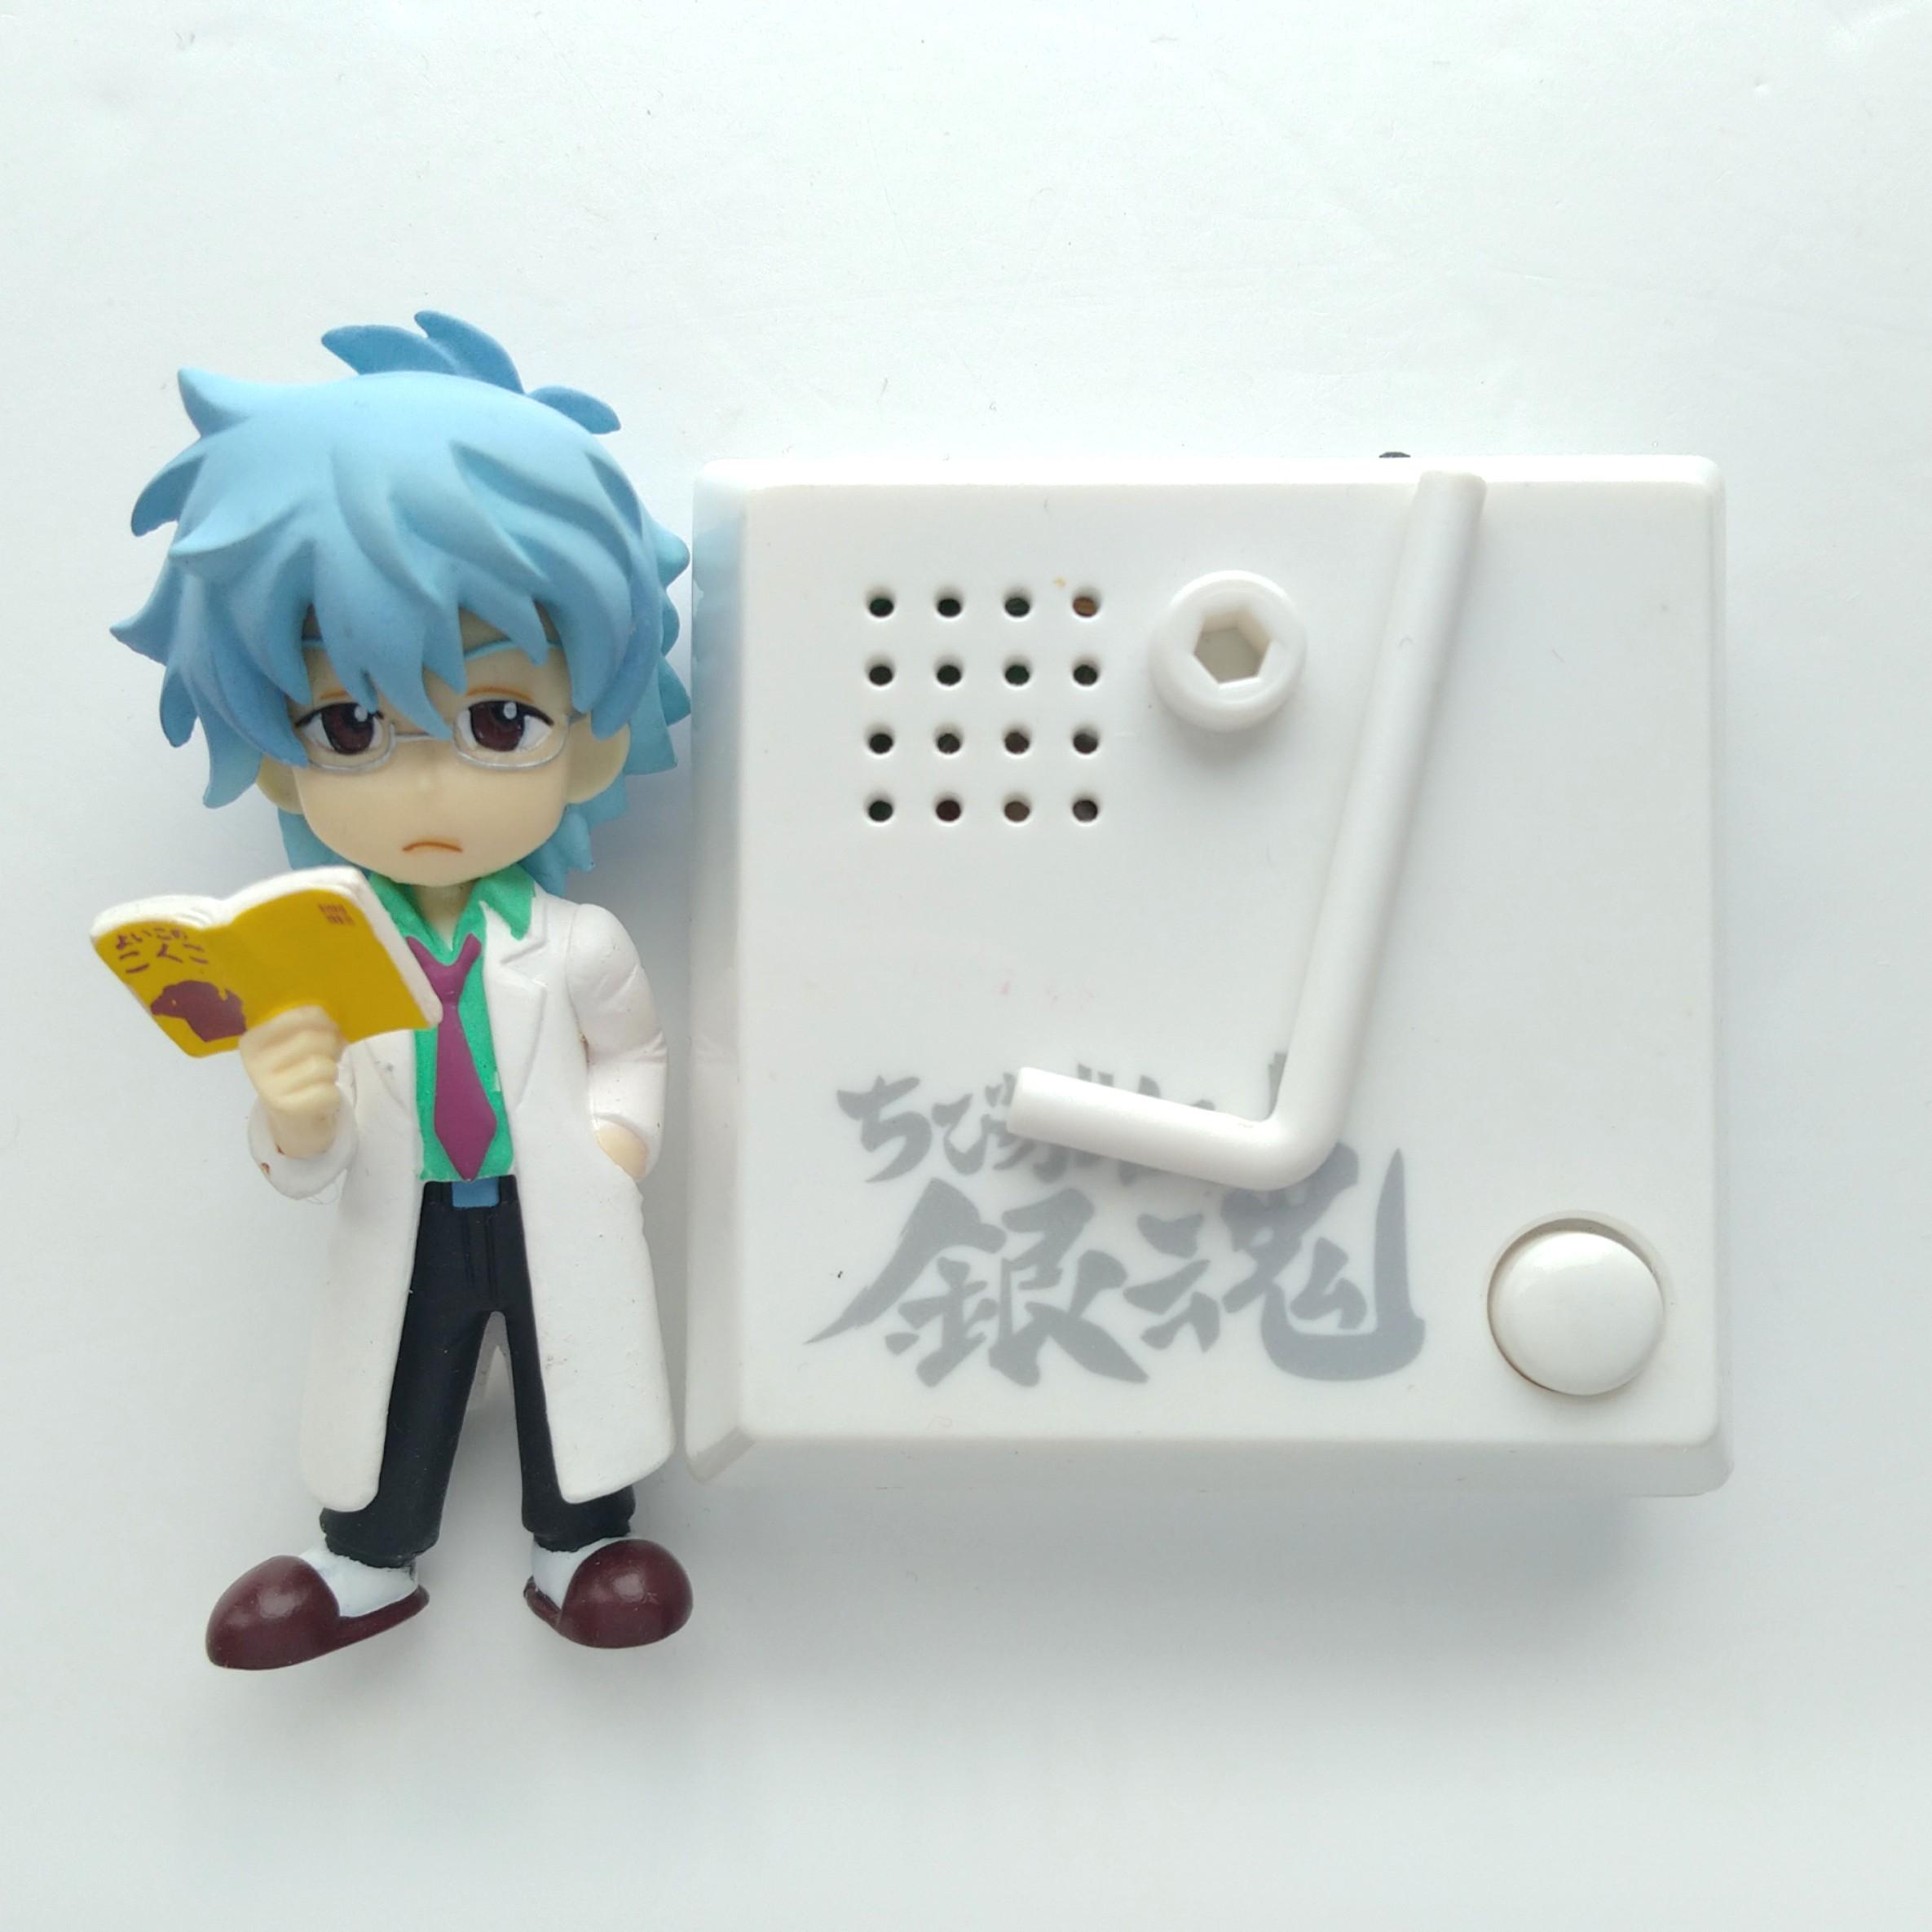 銀魂q版發聲figure Chibi Voice 坂田銀時銀八先生 玩具 遊戲類 玩具 Carousell